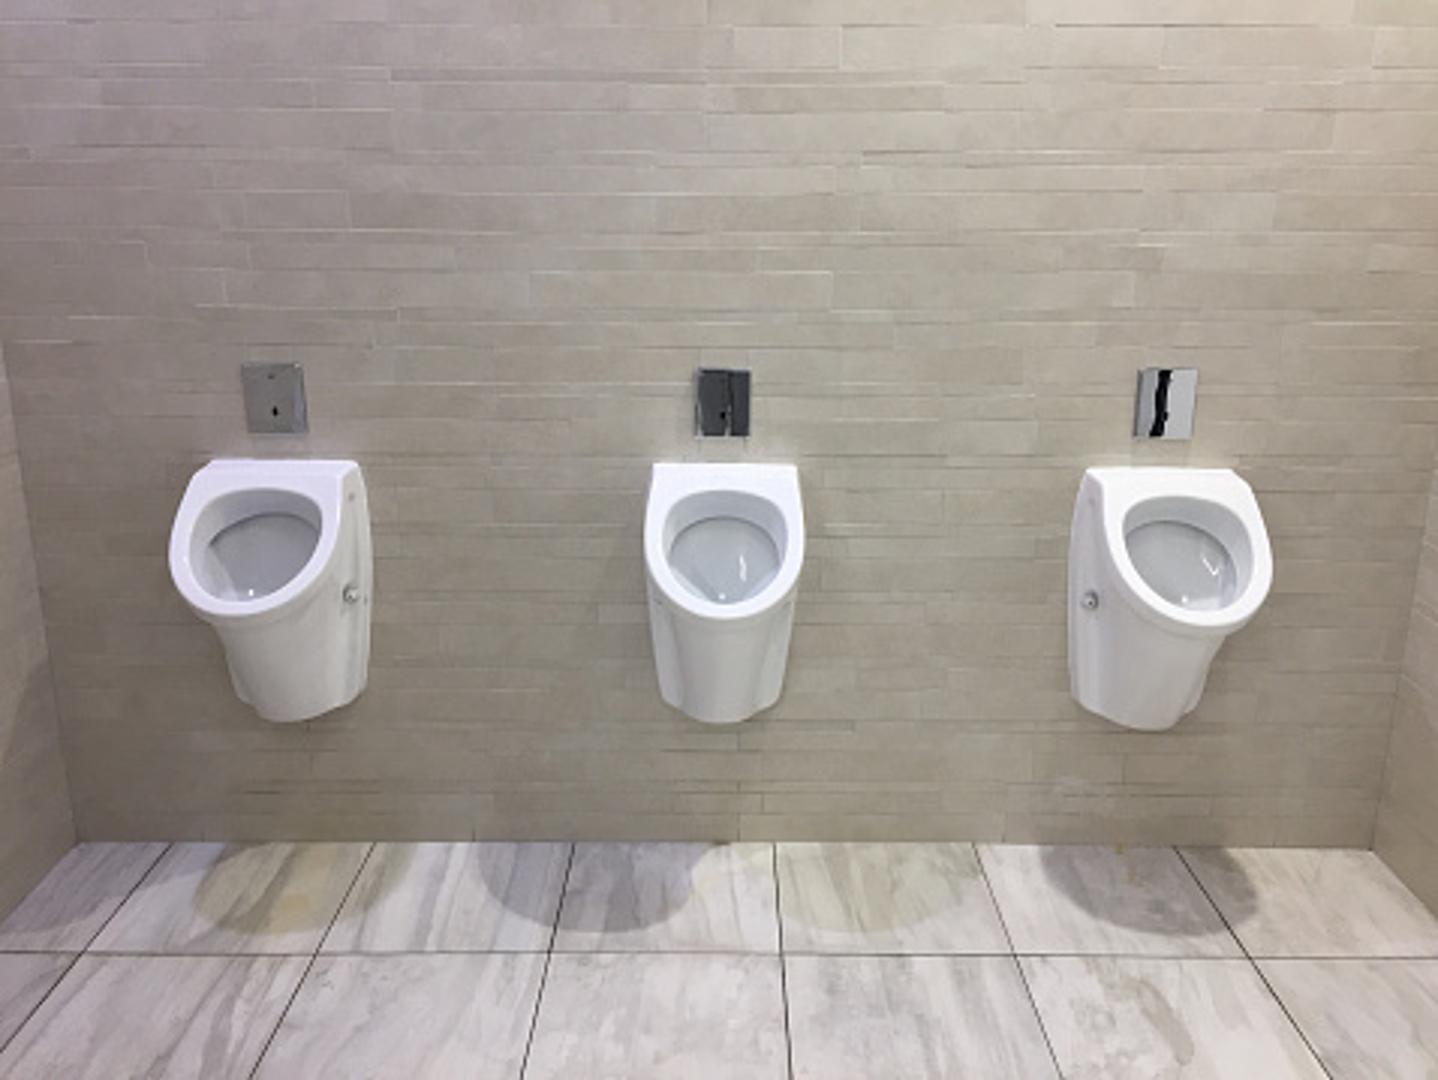 Ostavite razmak ako niste jedini u wc-u. To je minimum pristojnosti. Ako su dvojica muškaraca ispred vas i jedno je mjesto između njih slobodno, nemojte stati u sredinu. Nikako...